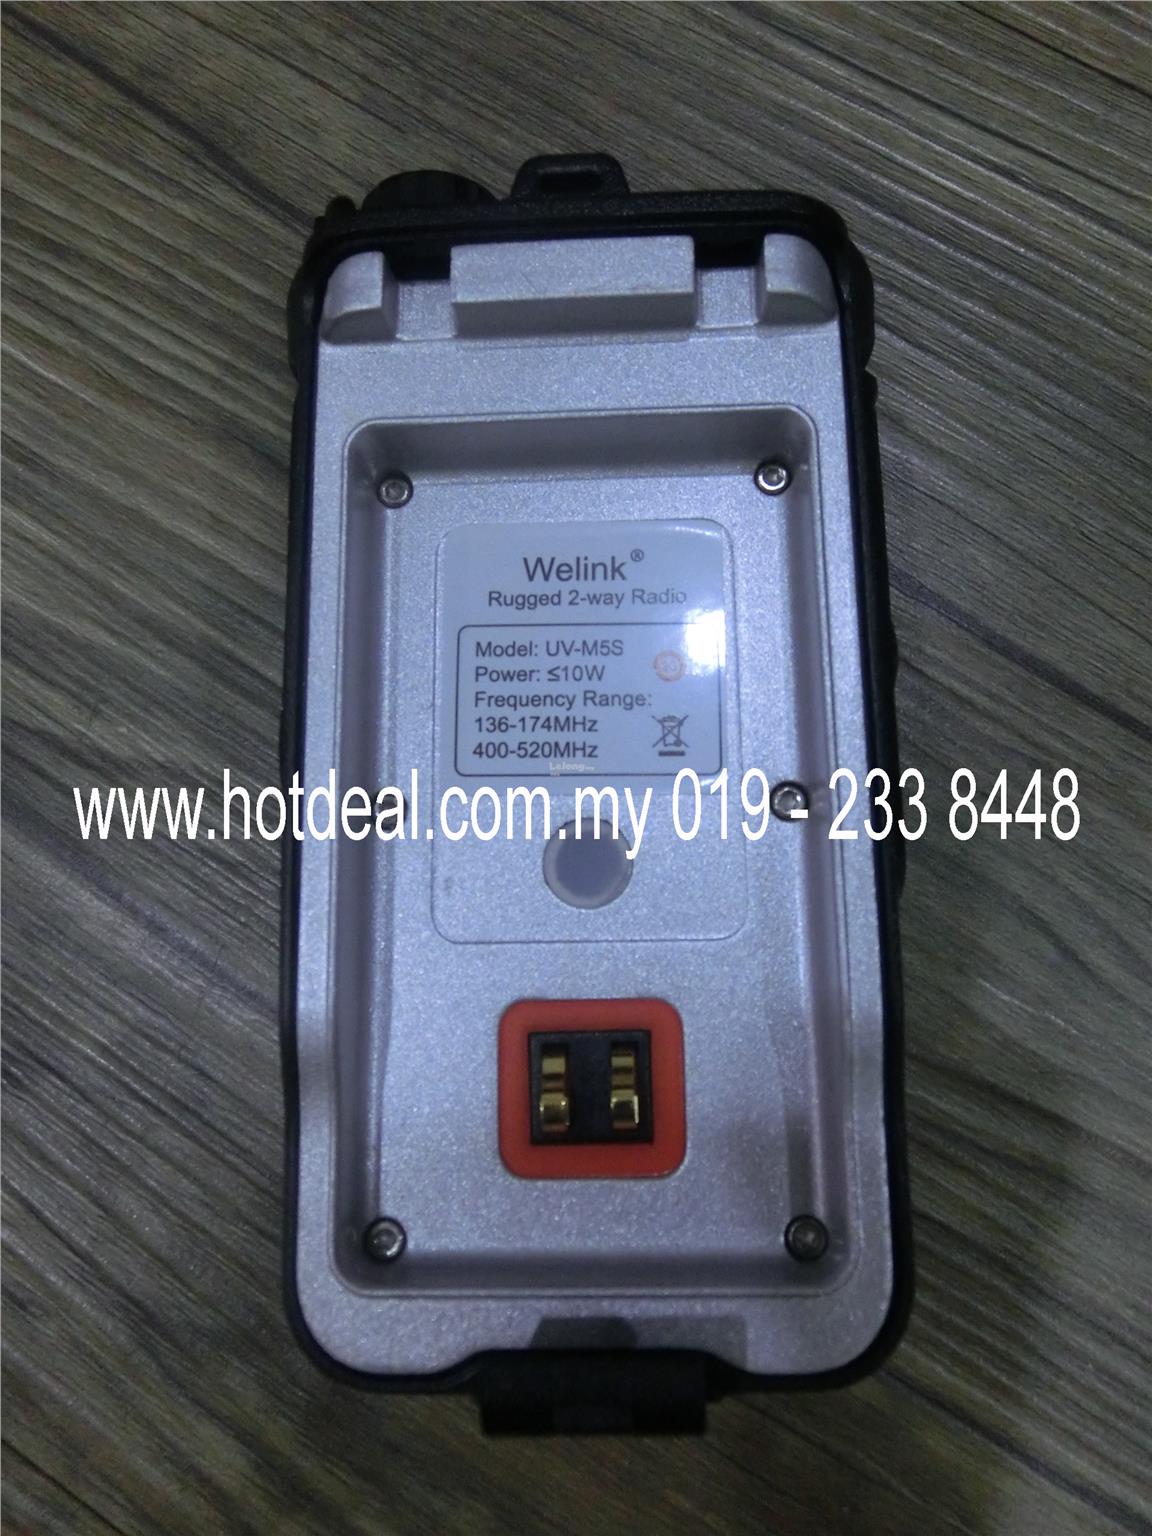 Walkie talkie Welink m6 waterproof high power dualband